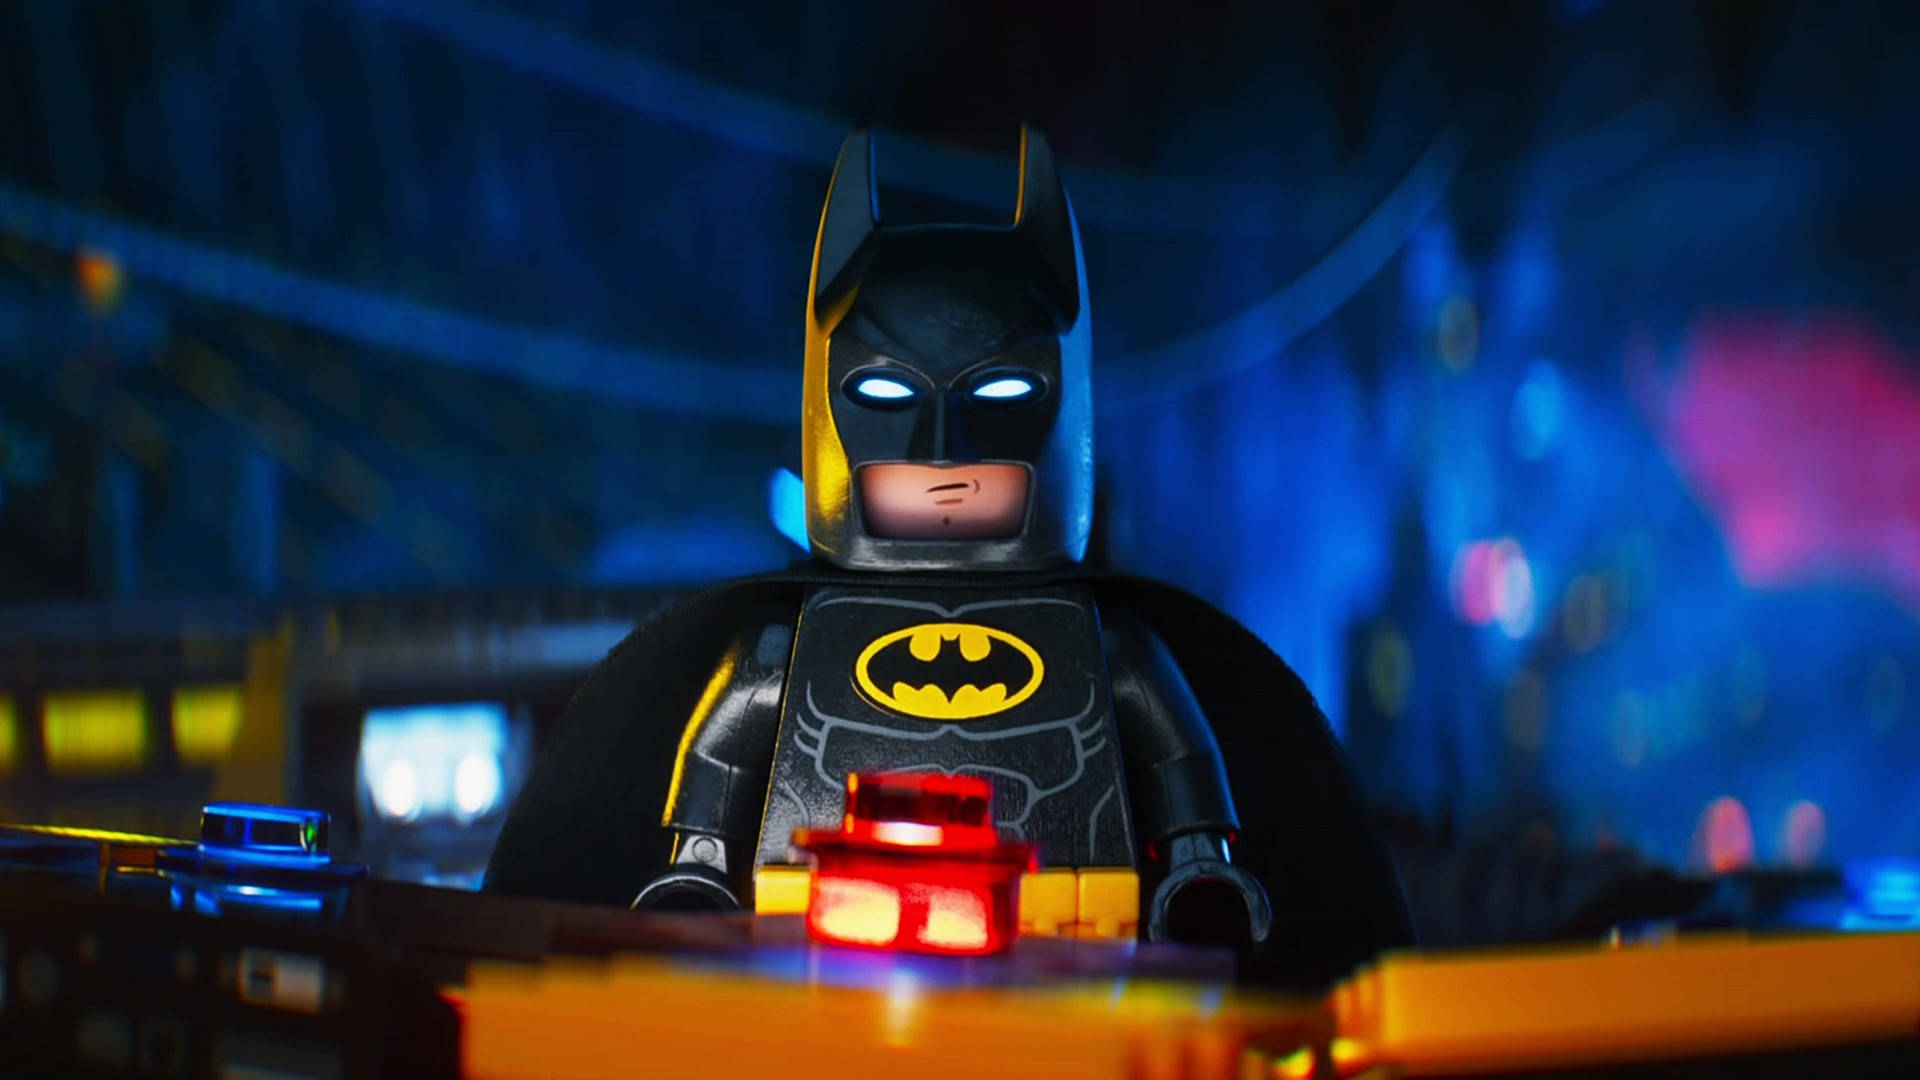 Download The Lego Batman Movie 3d Wallpaper 